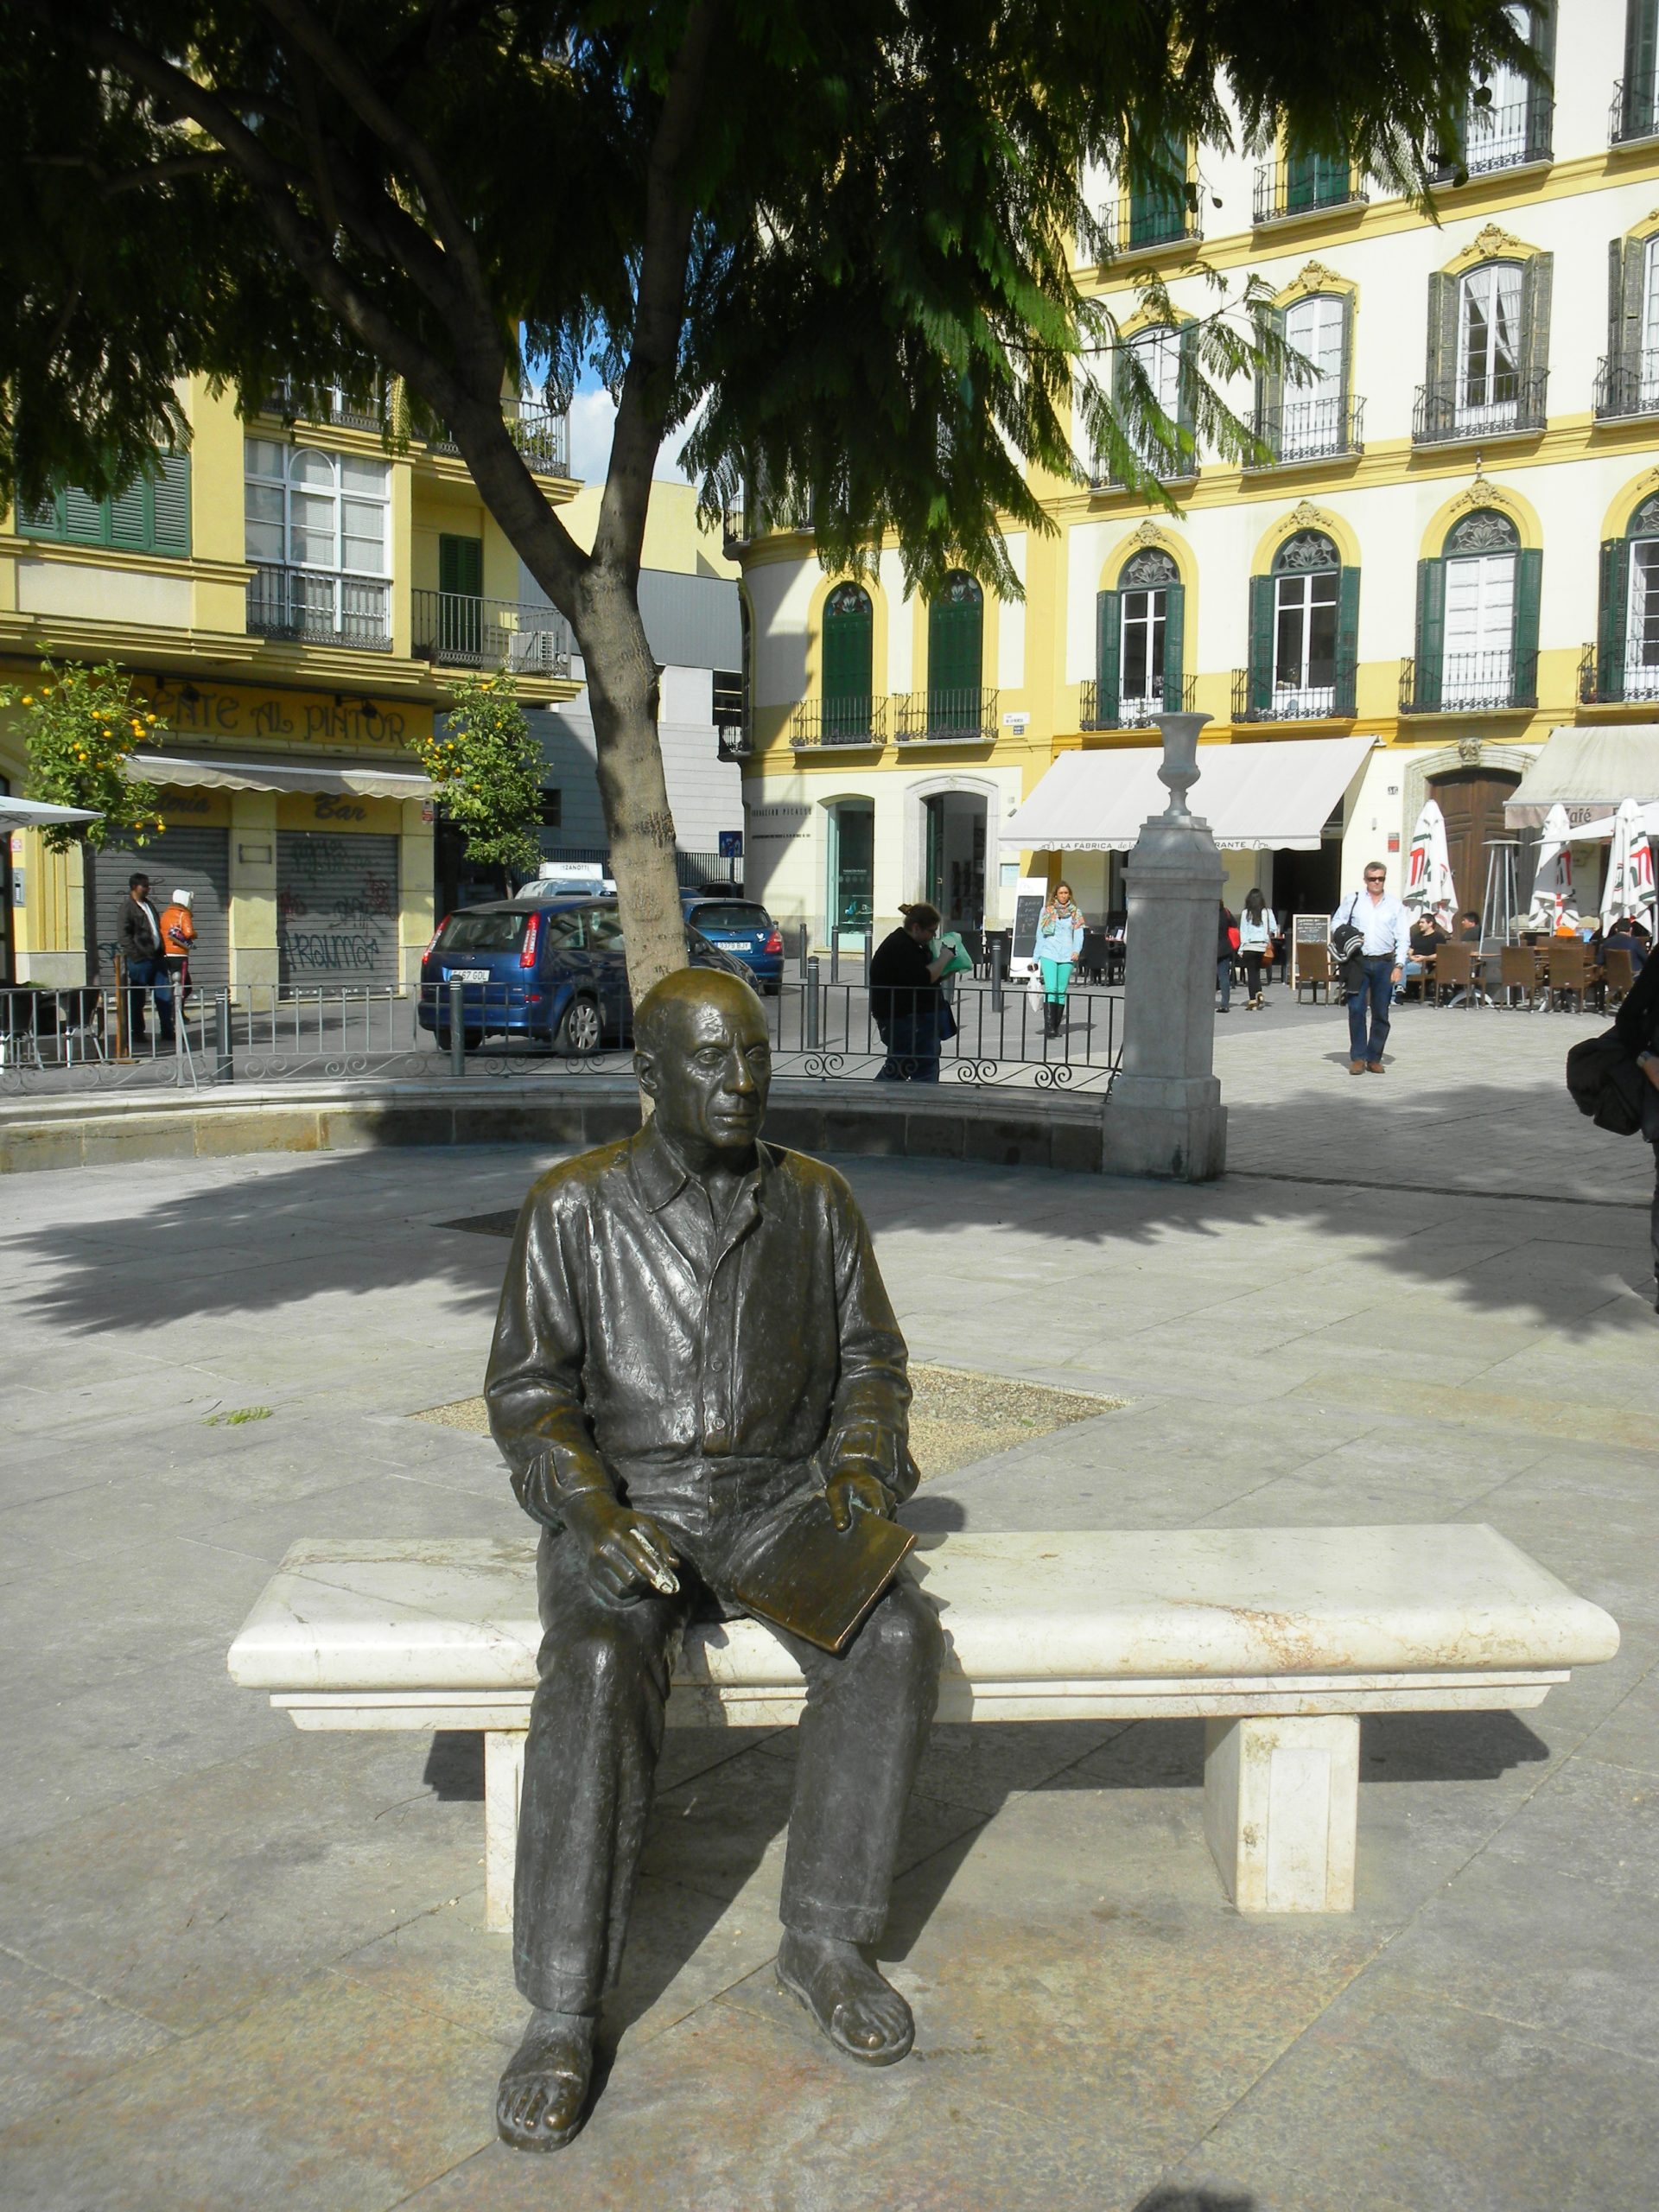 Picasso in Plaza de la Merced, Malaga